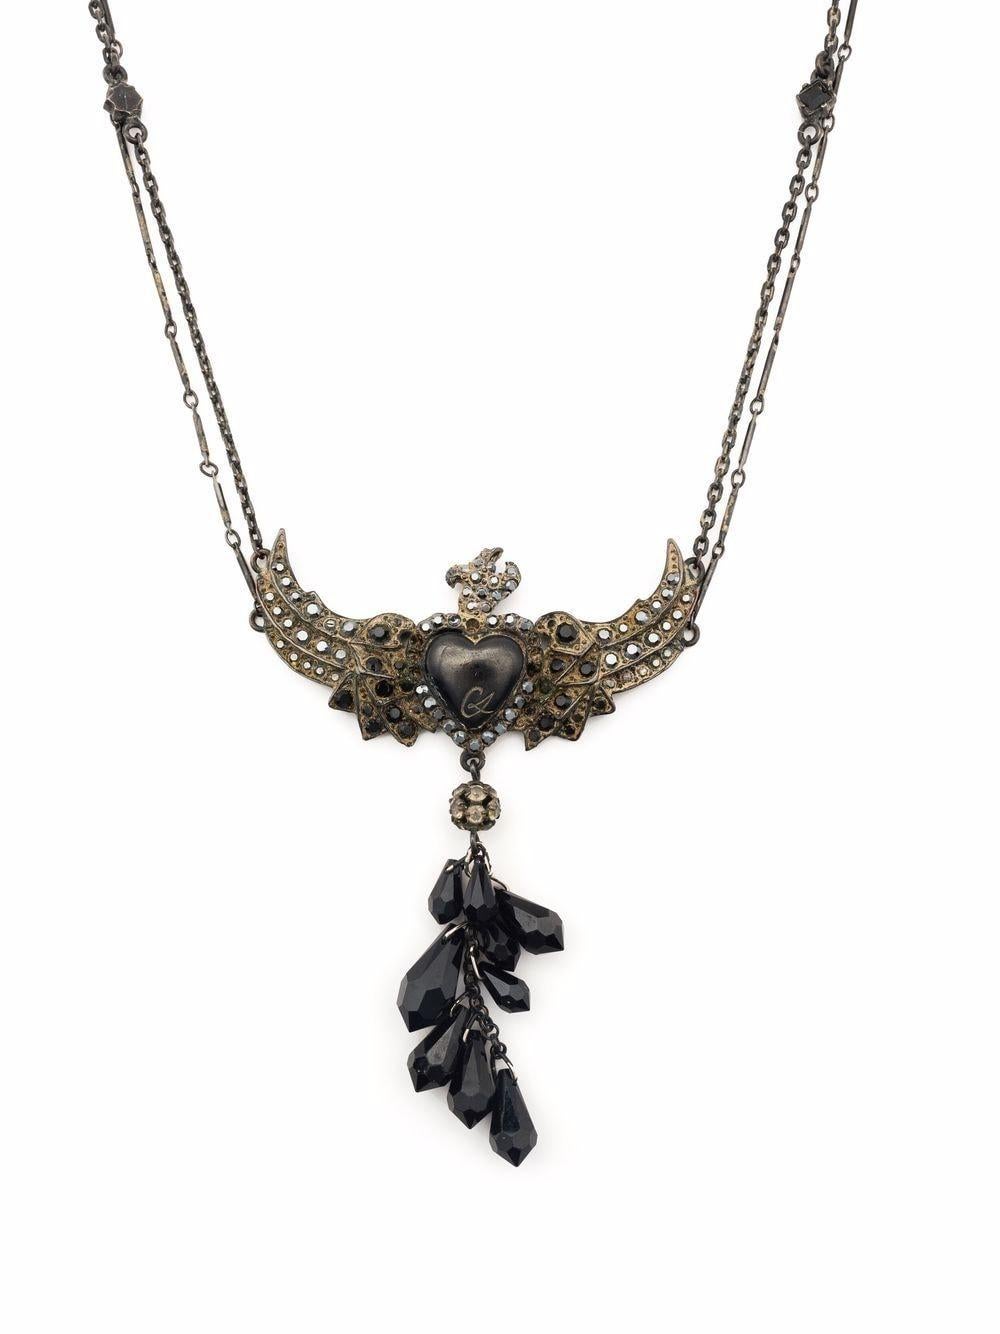 Collier Christian Lacroix des années 1980 en forme de cœur d'oiseau avec pierre noire/bronze, détails de perles, motif en forme de cœur, chaîne à maillons de câble, fermeture à griffes de homard, chaîne à longueur réglable.
Longueur ouverte  14.6